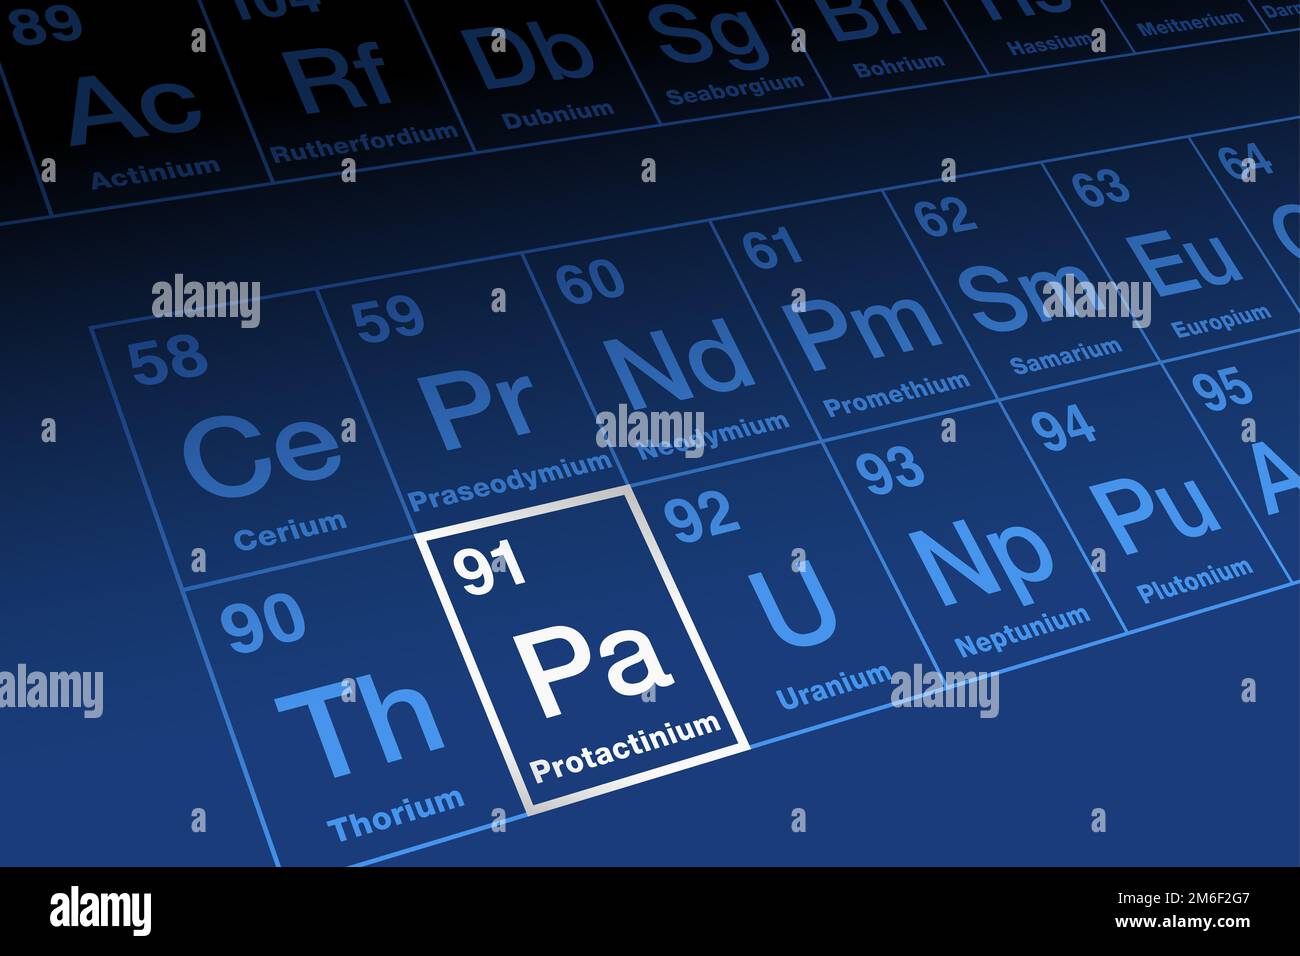 Protactinio su tavola periodica degli elementi. Elemento metallico radioattivo della serie di actinide, con numero atomico 91 e simbolo Pa. Foto Stock